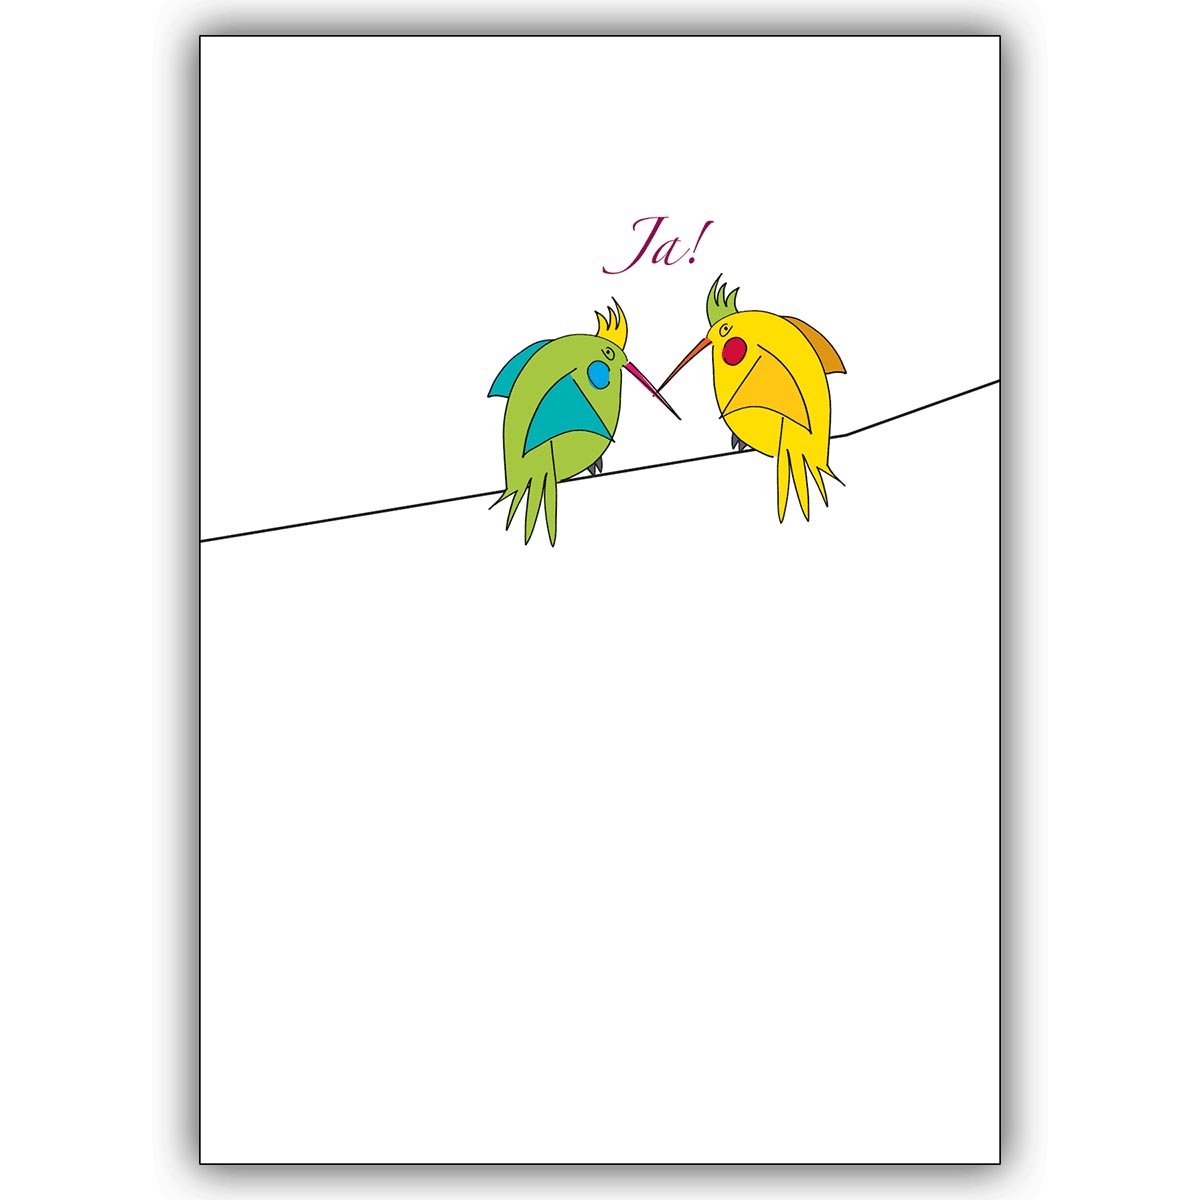 Lustige Hochzeitsanzeigenkarte mit verliebten Vögeln, die “Ja” sagen